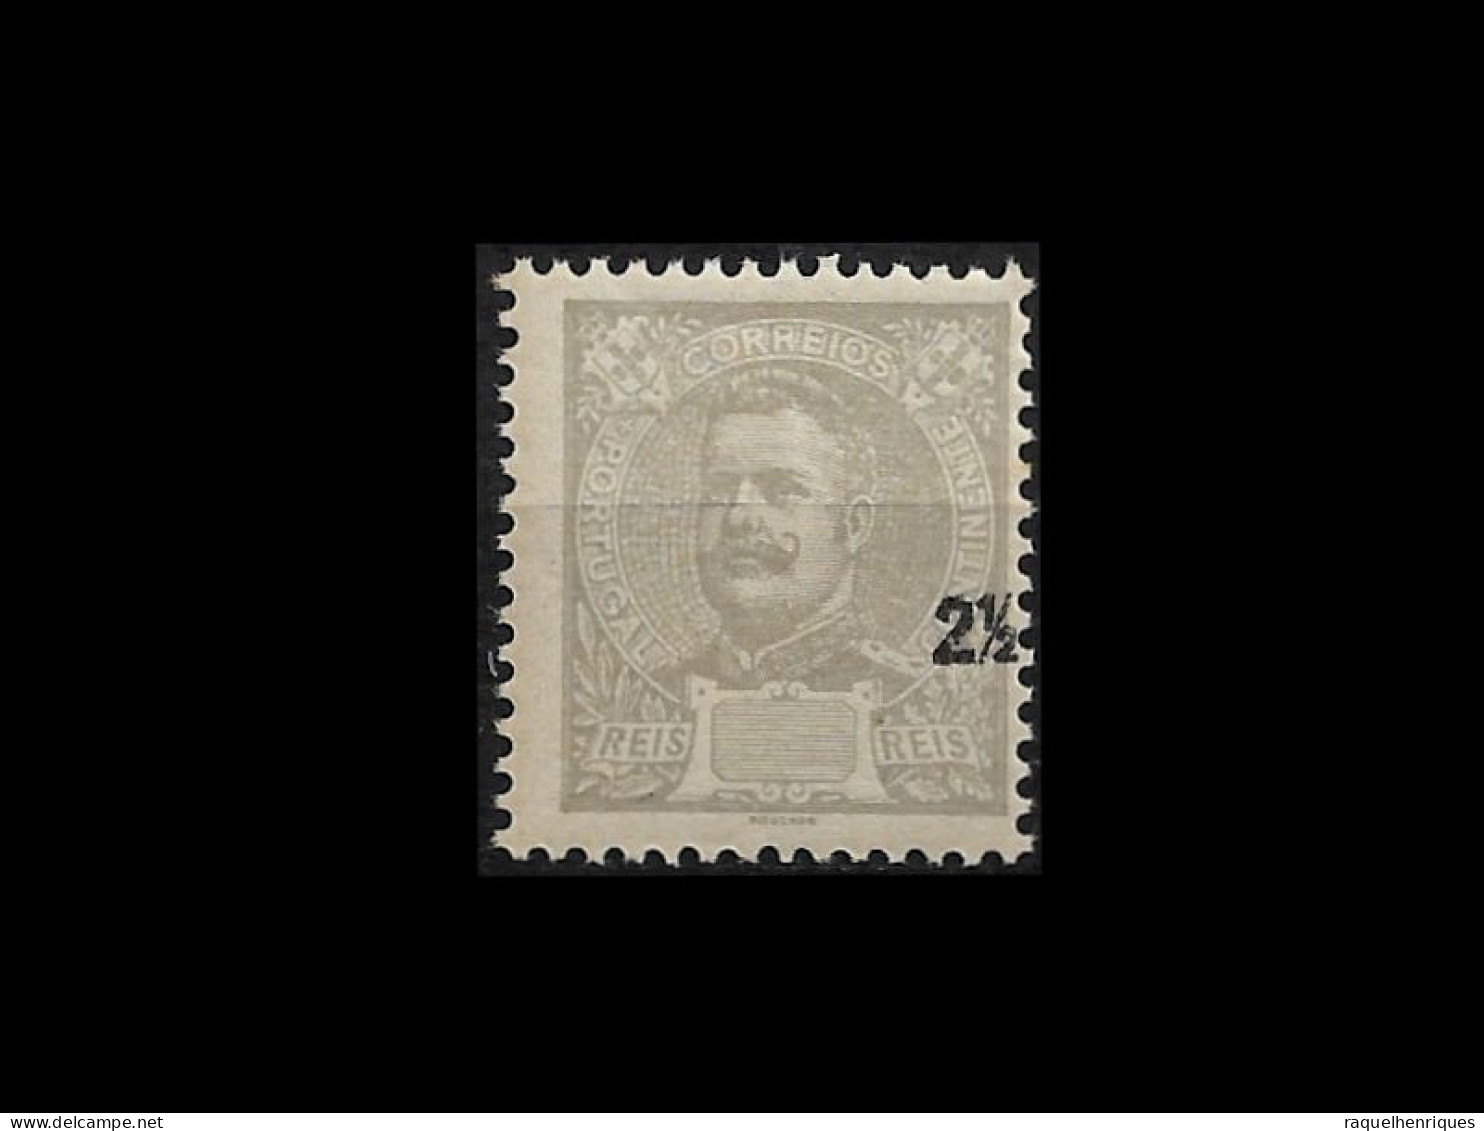 PORTUGAL STAMP - 1895 D. CARLOS I - TAXA DESLOCADA - ERROR VALUE DISPLACED MNH (LESP#20) - Proofs & Reprints